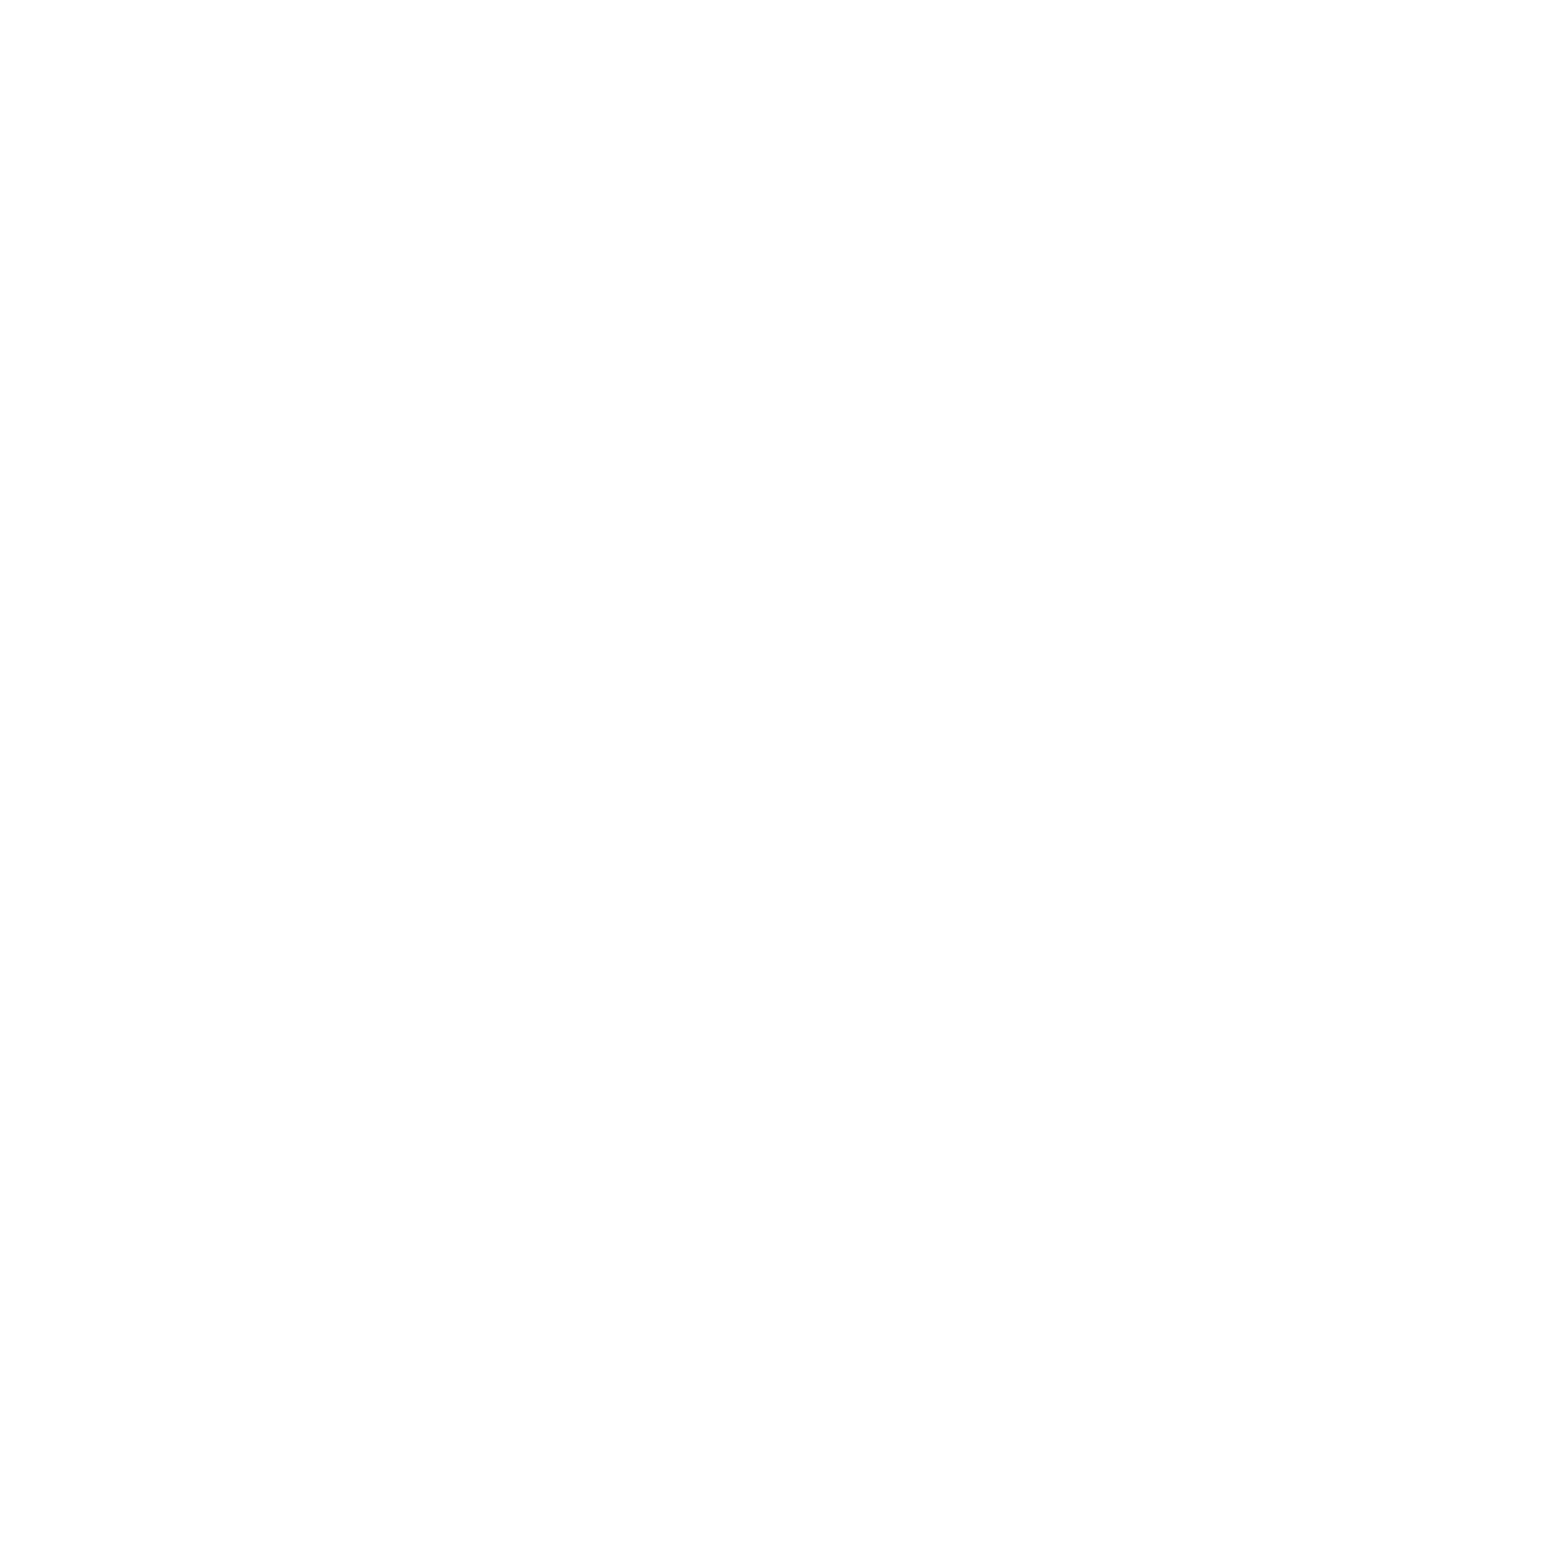 Frontier Communications logo pour fonds sombres (PNG transparent)